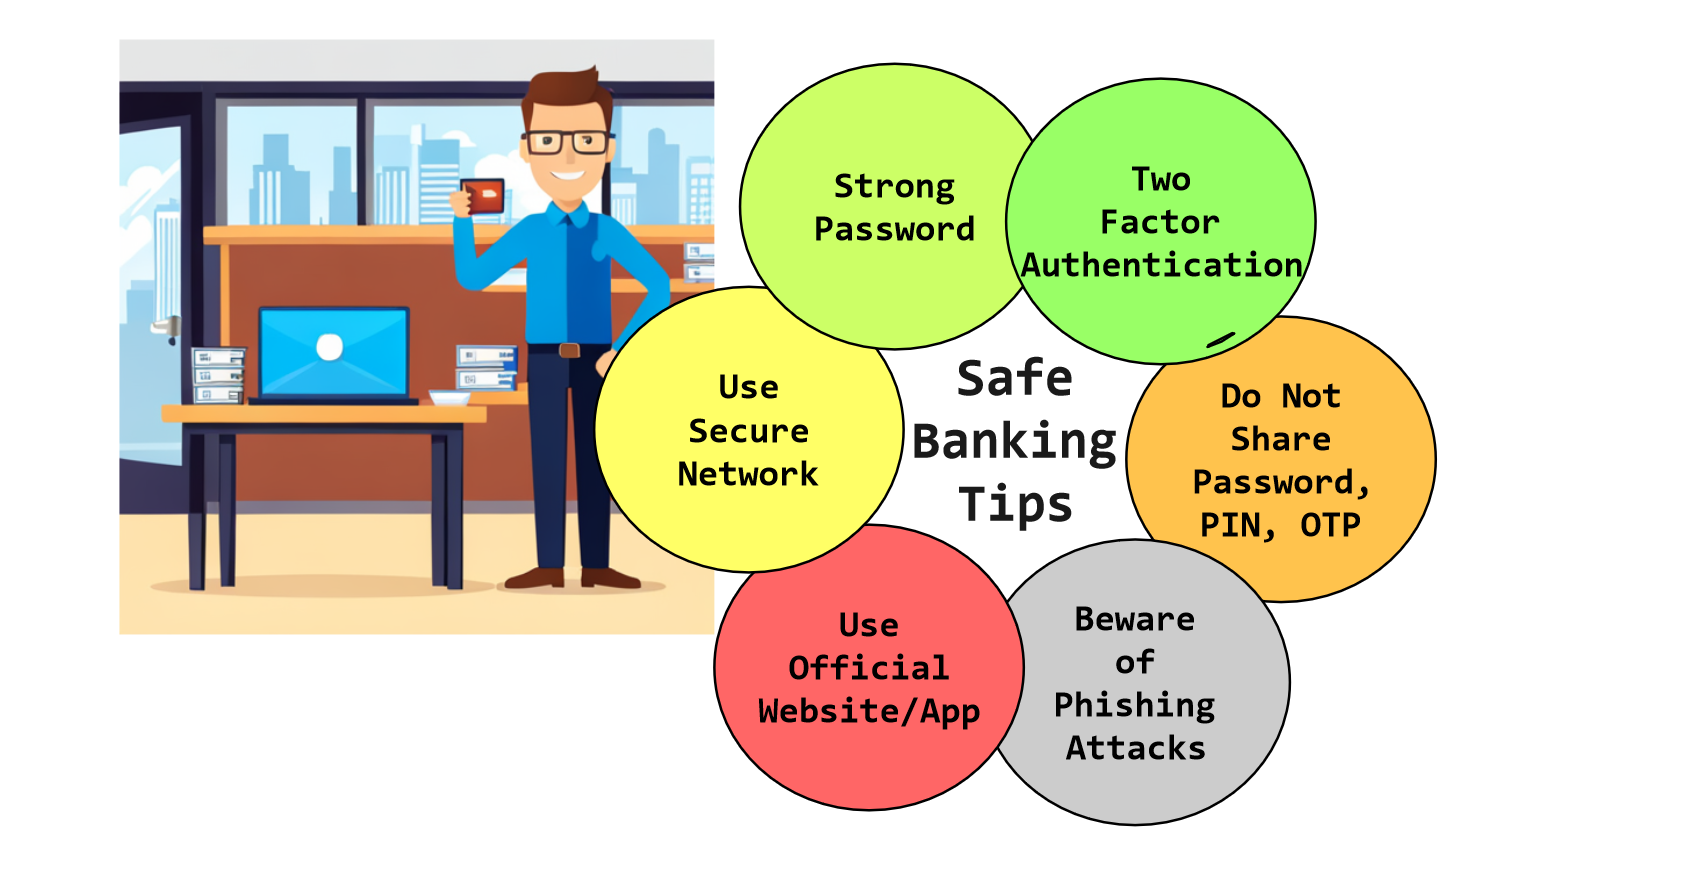 Safe Online Banking Tips